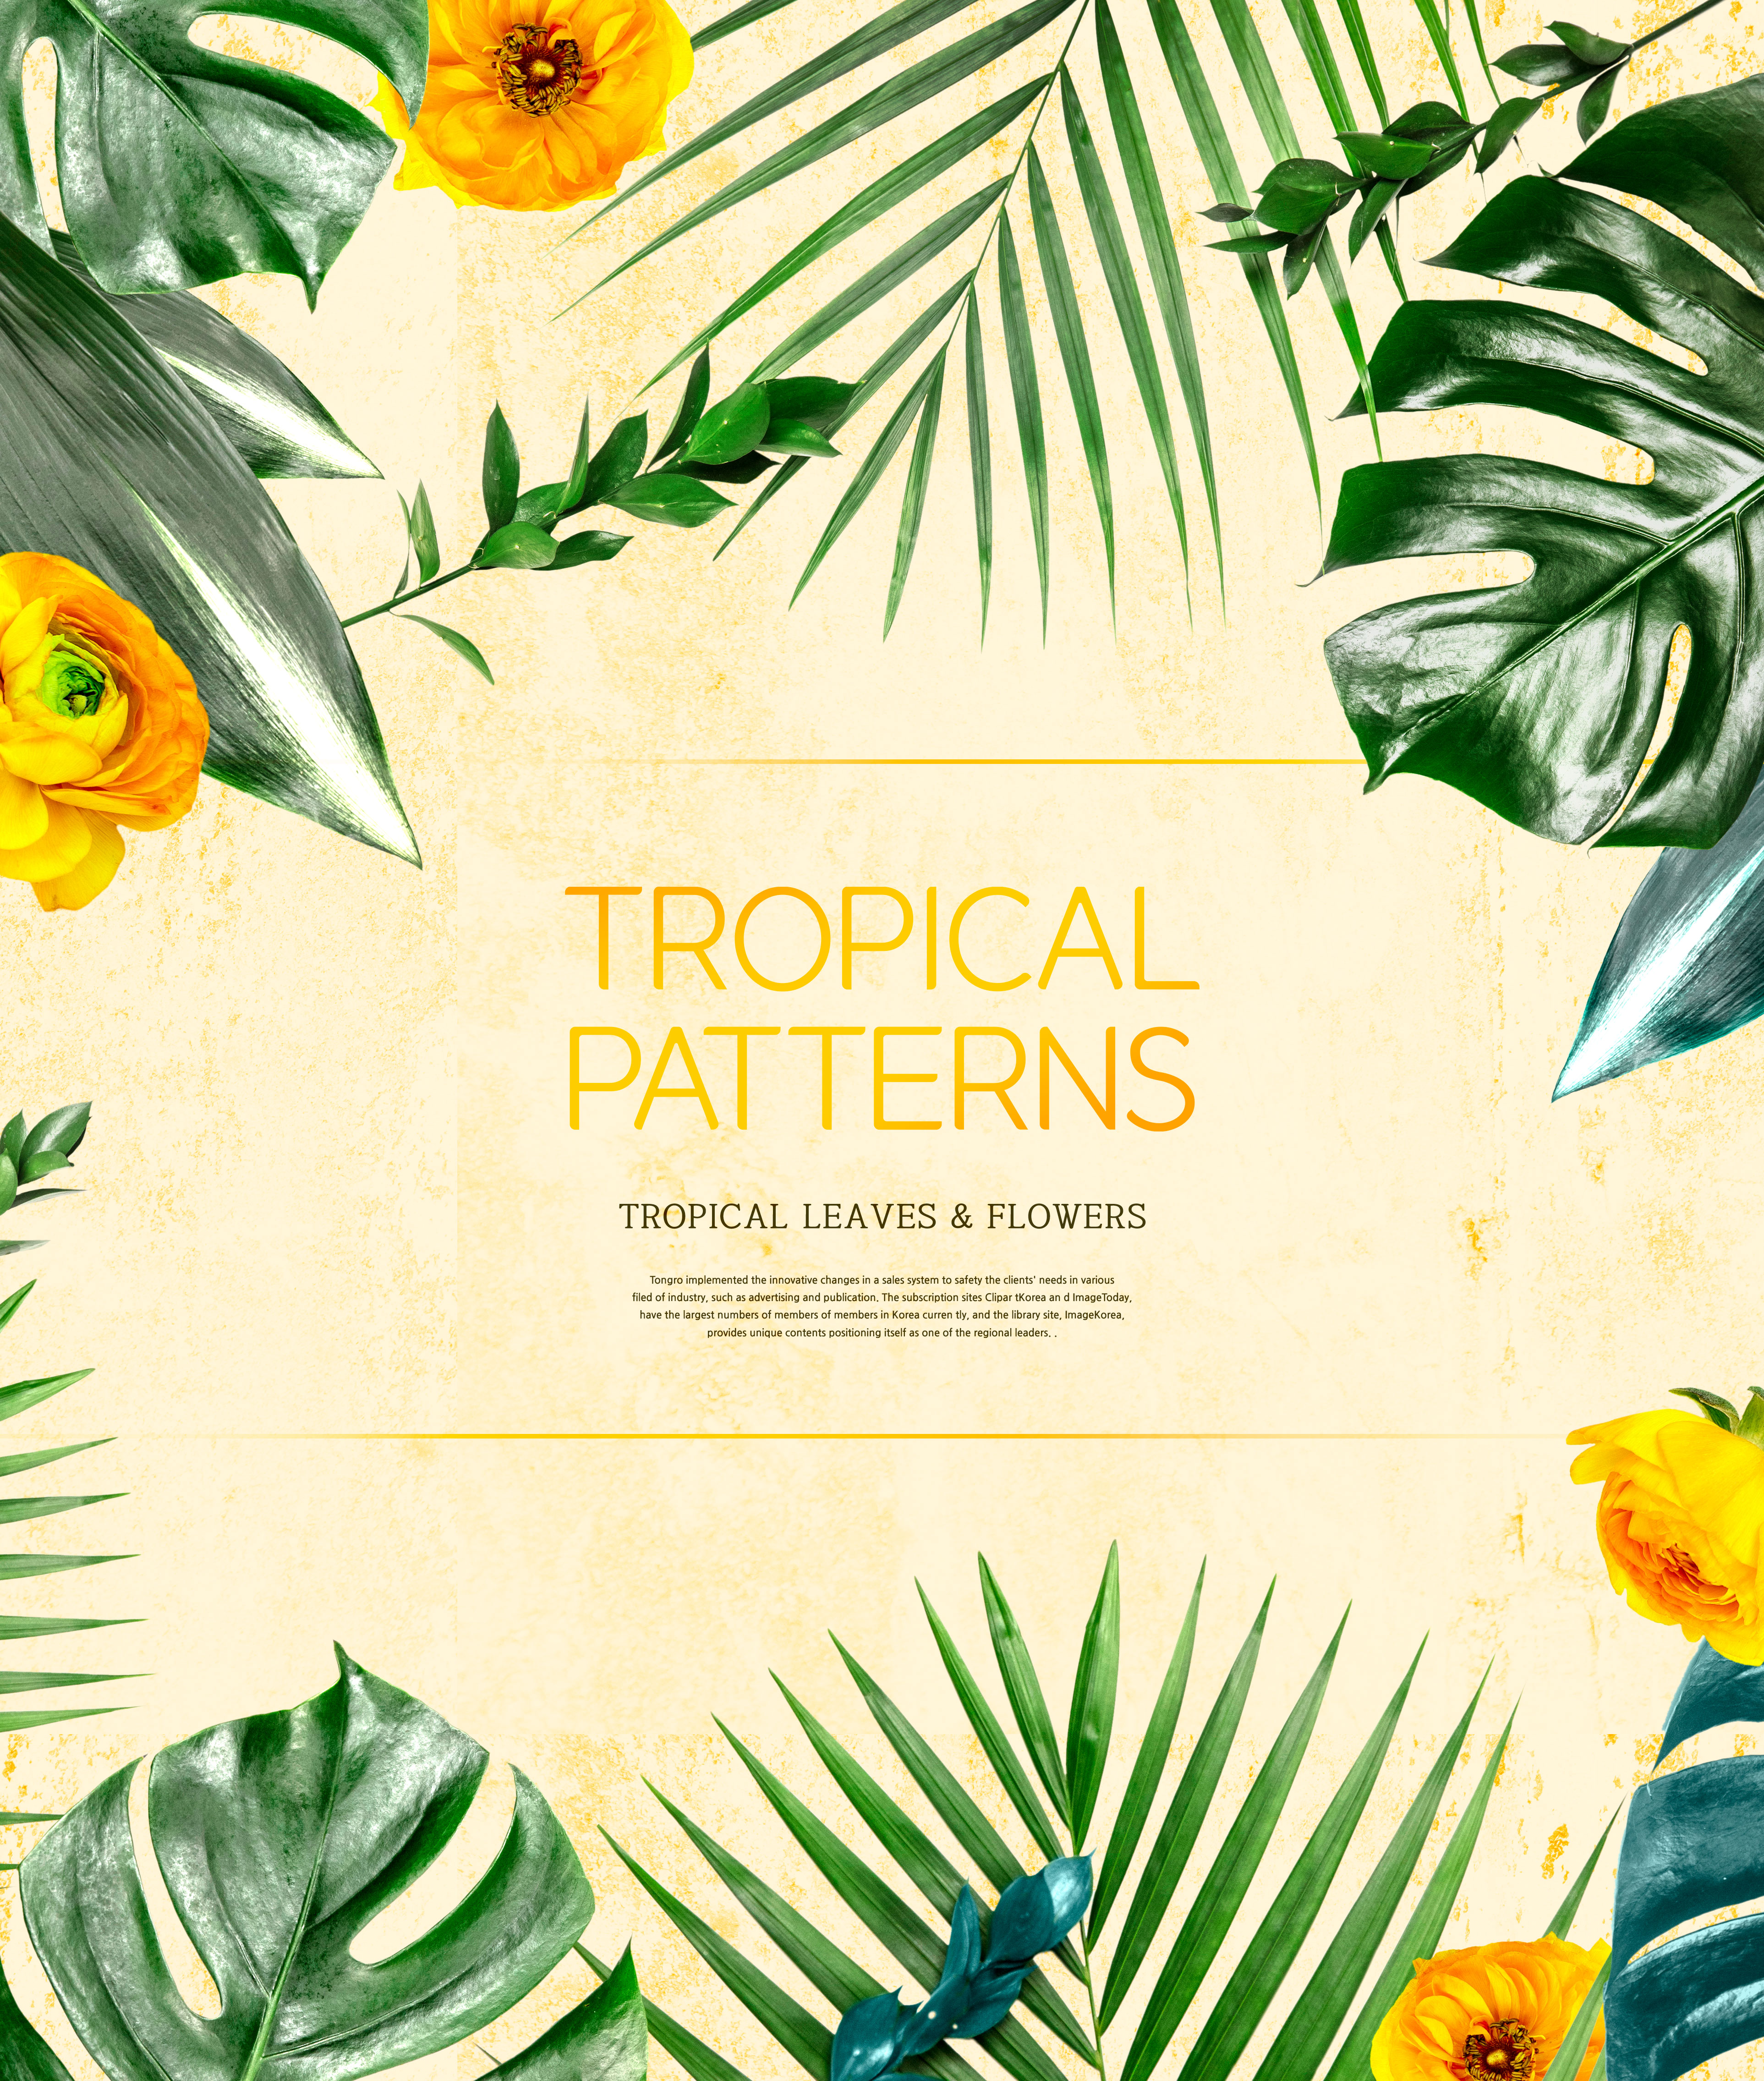 热带主题叶子&花卉图案海报设计素材插图(3)